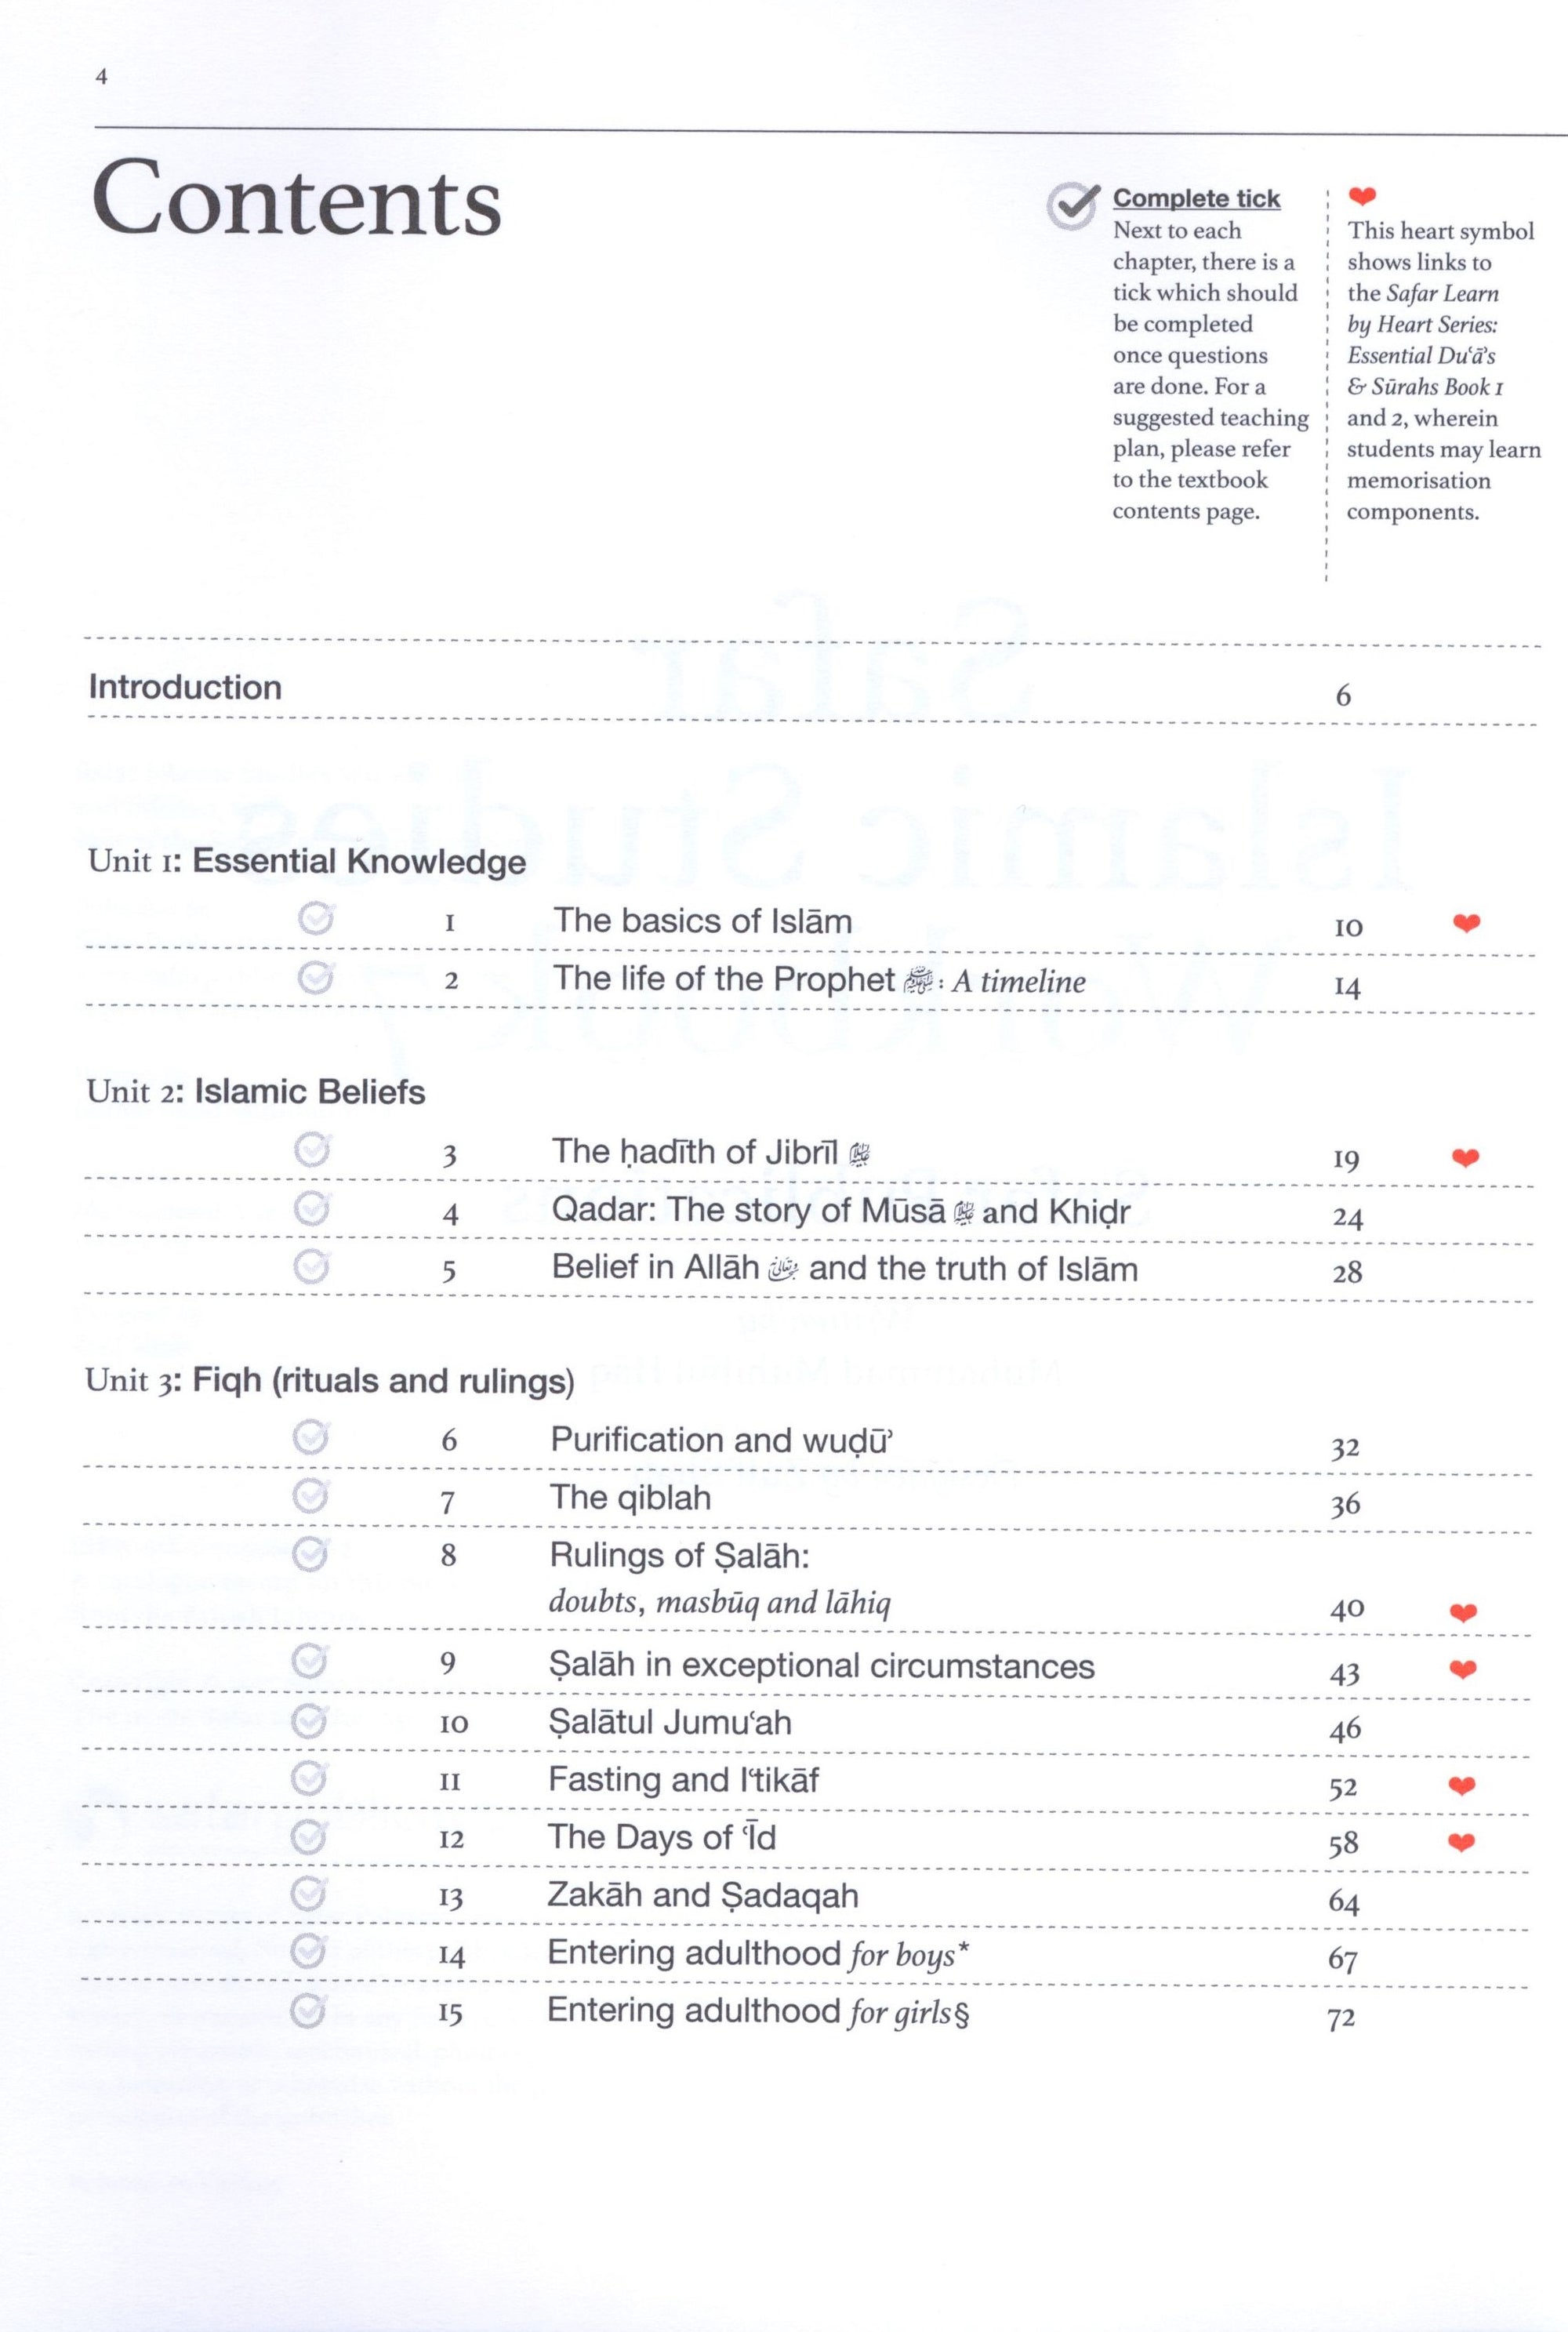 Safar Islamic Studies Workbook 7